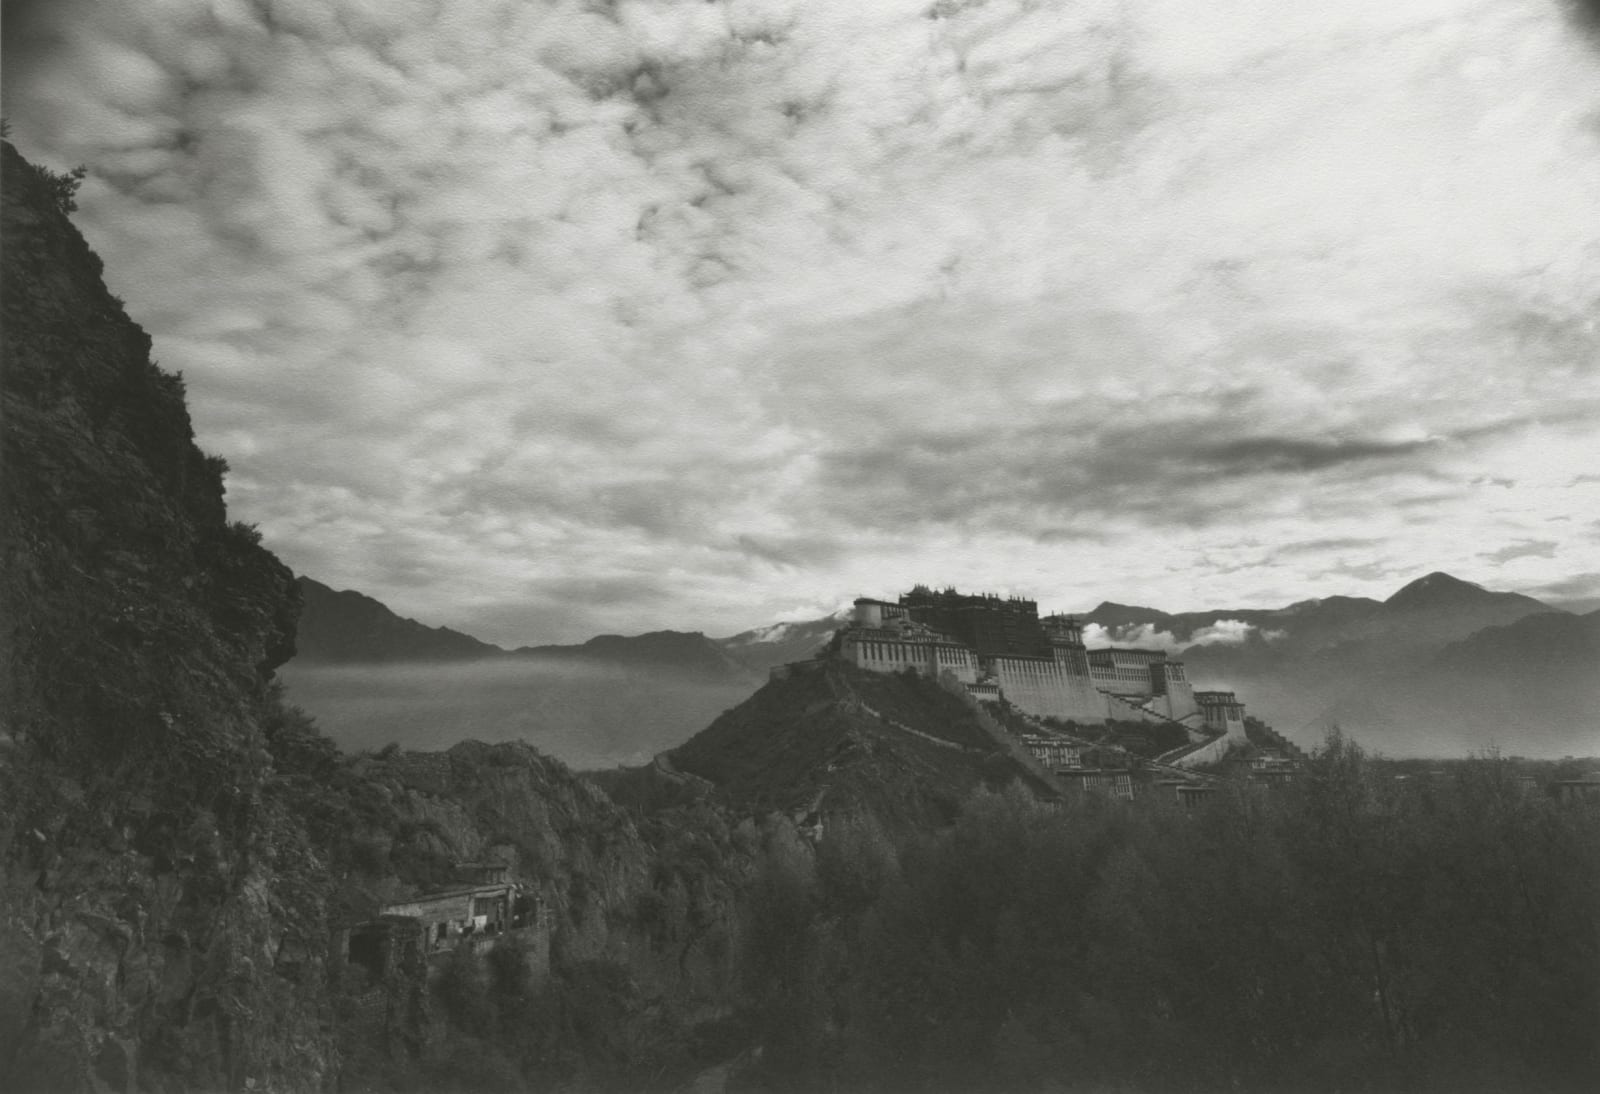 Kenro Izu, Lhasa #13, Potala, Tibet, 1999